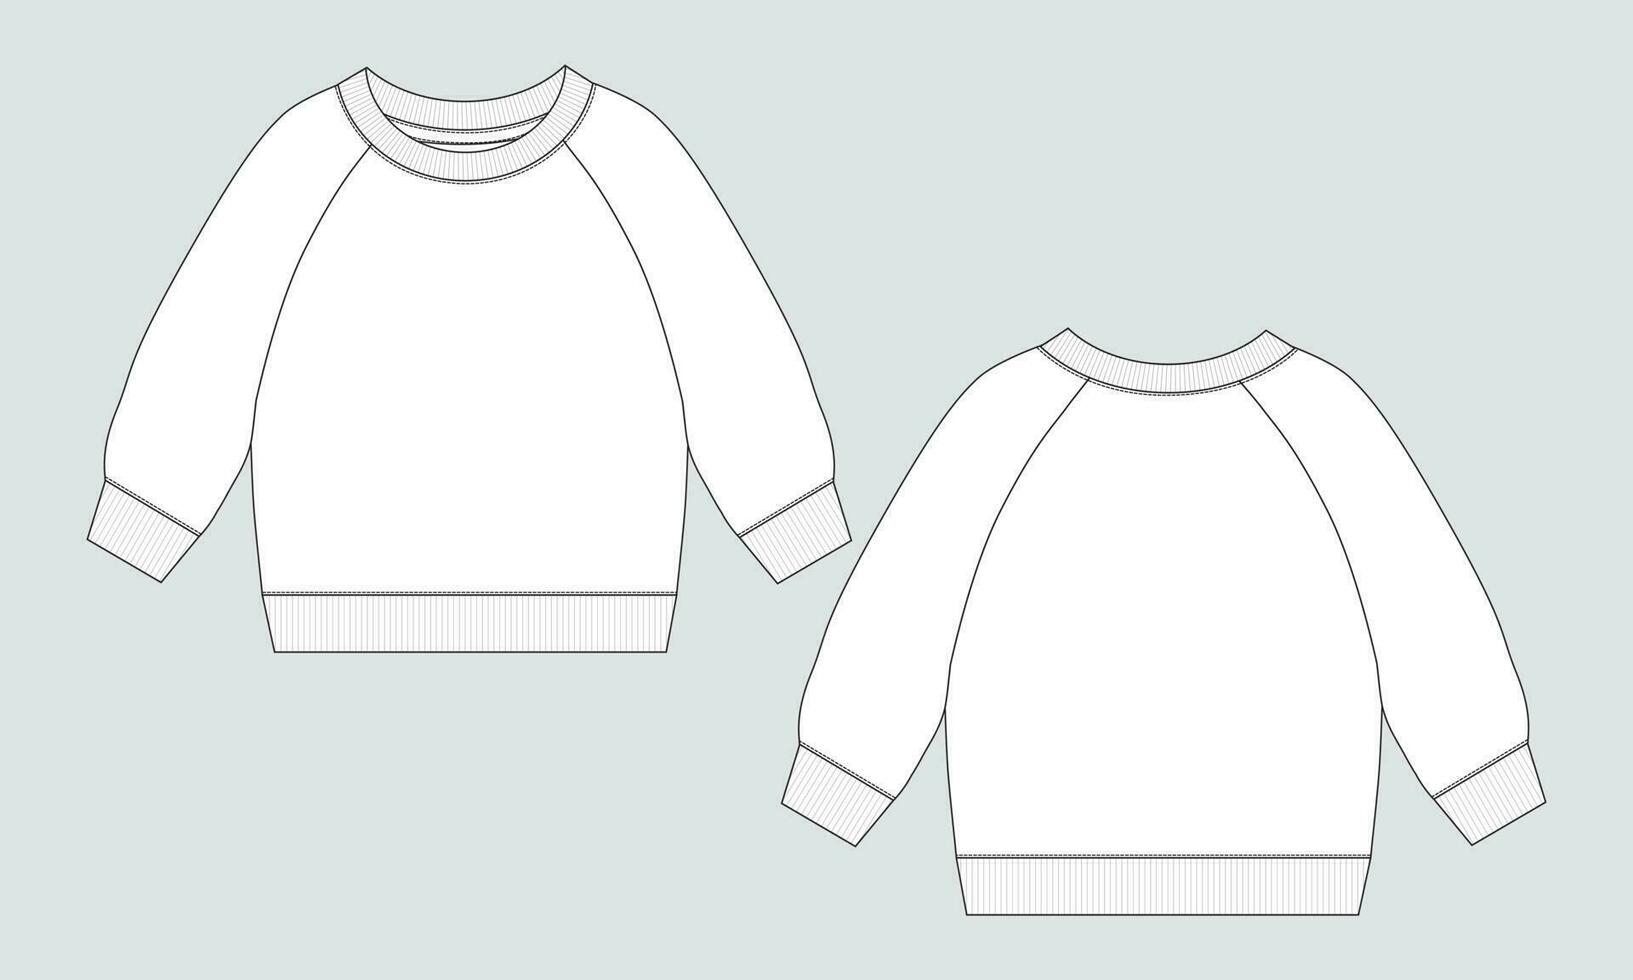 largo manga camisa de entrenamiento técnico dibujo Moda plano bosquejo vector modelo para de los hombres. suéter vestir diseño burlarse de arriba frente y espalda puntos de vista